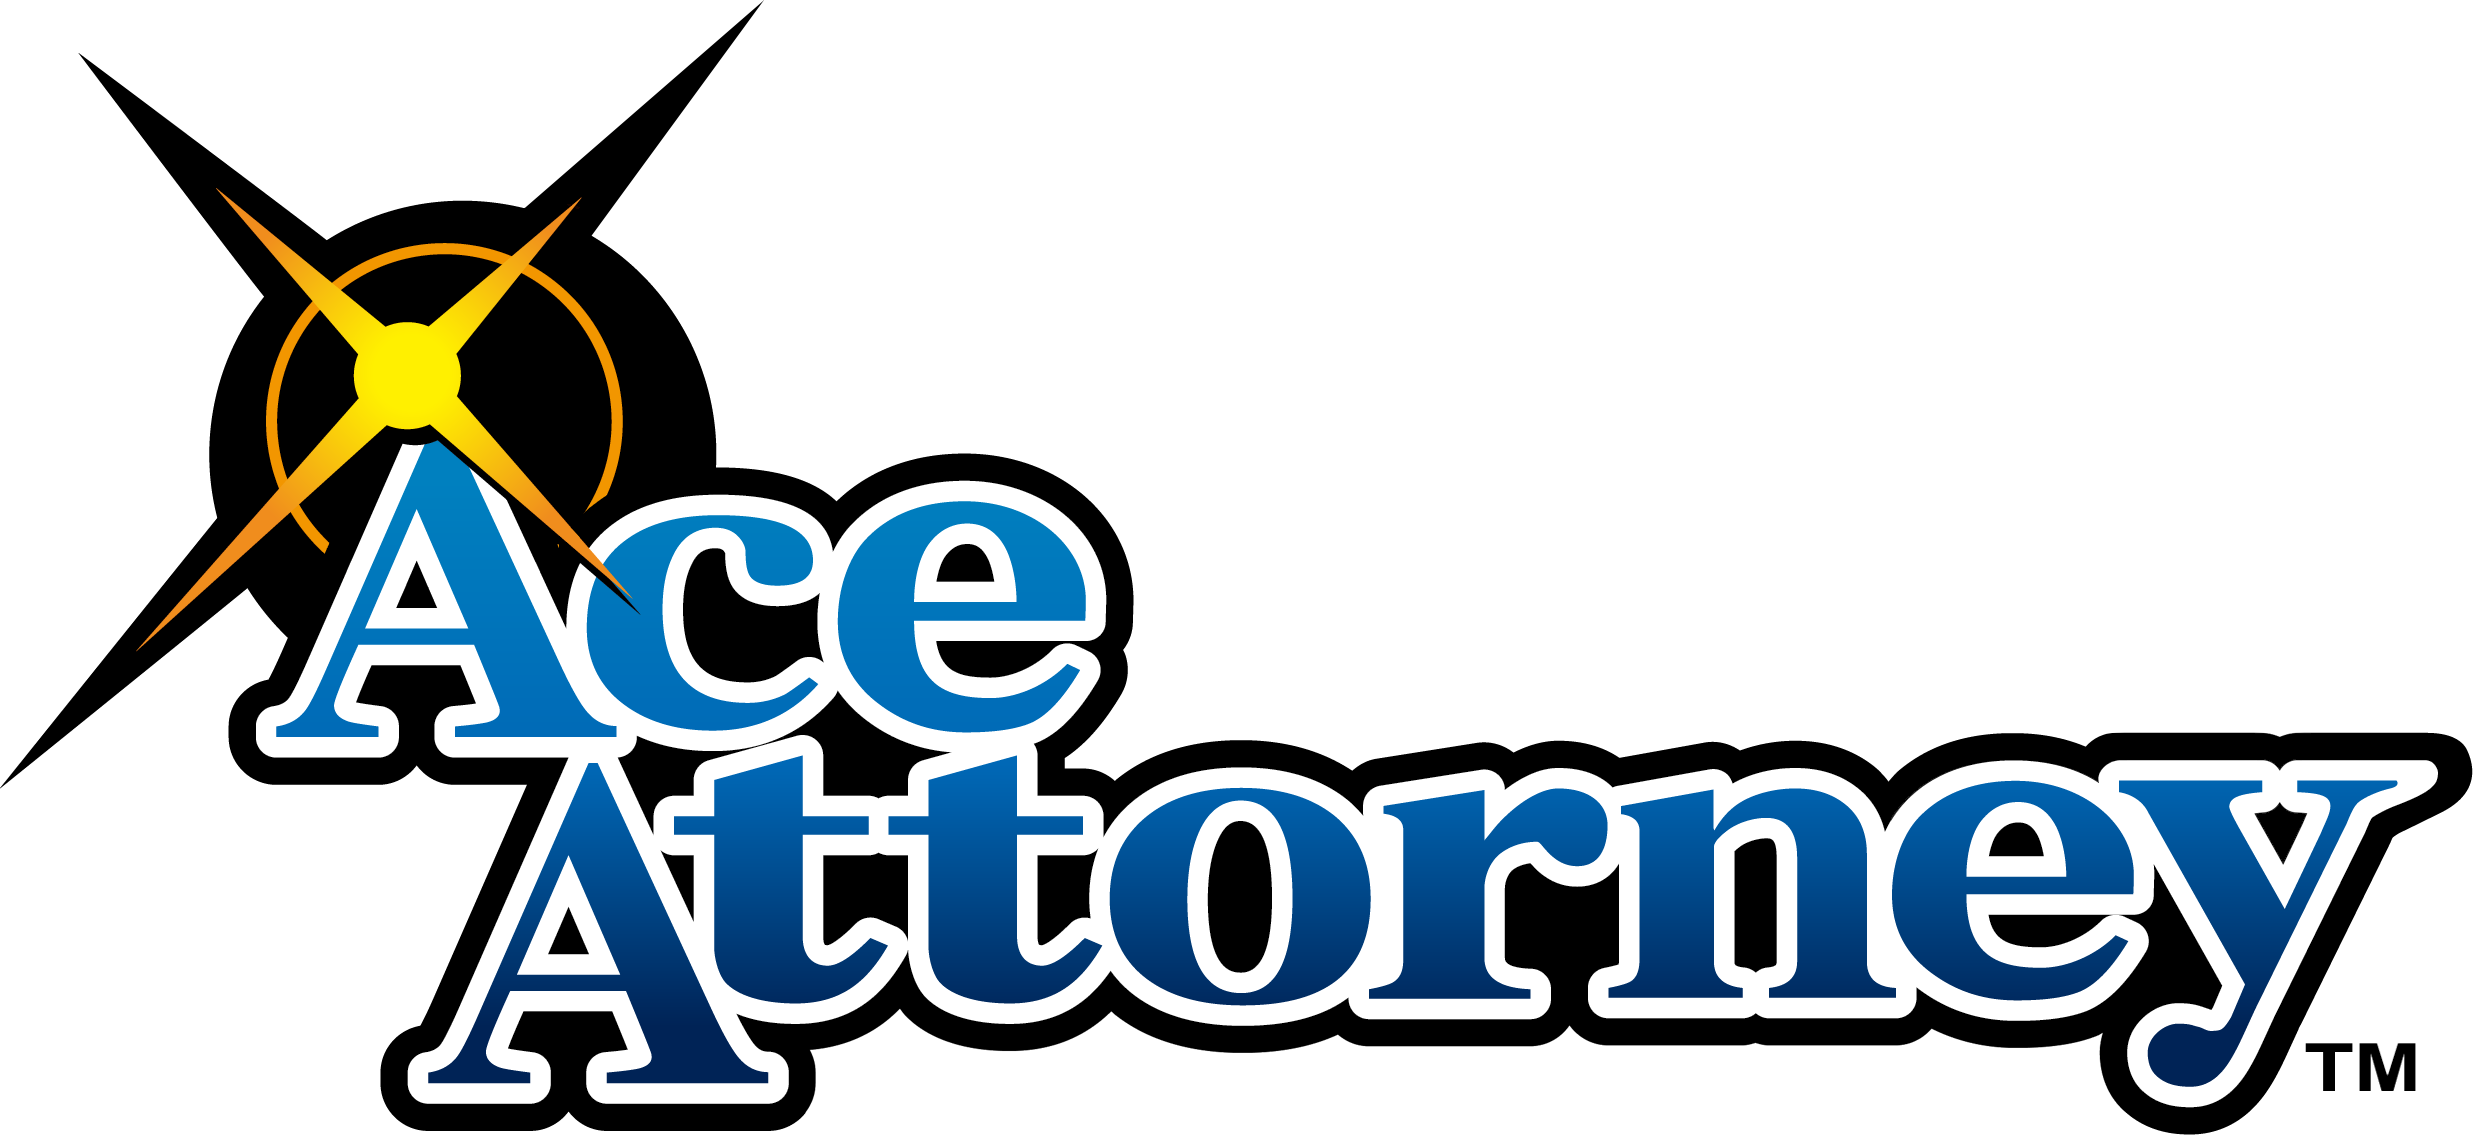 Ace Attorney | Ace Attorney Wiki | FANDOM powered by Wikia